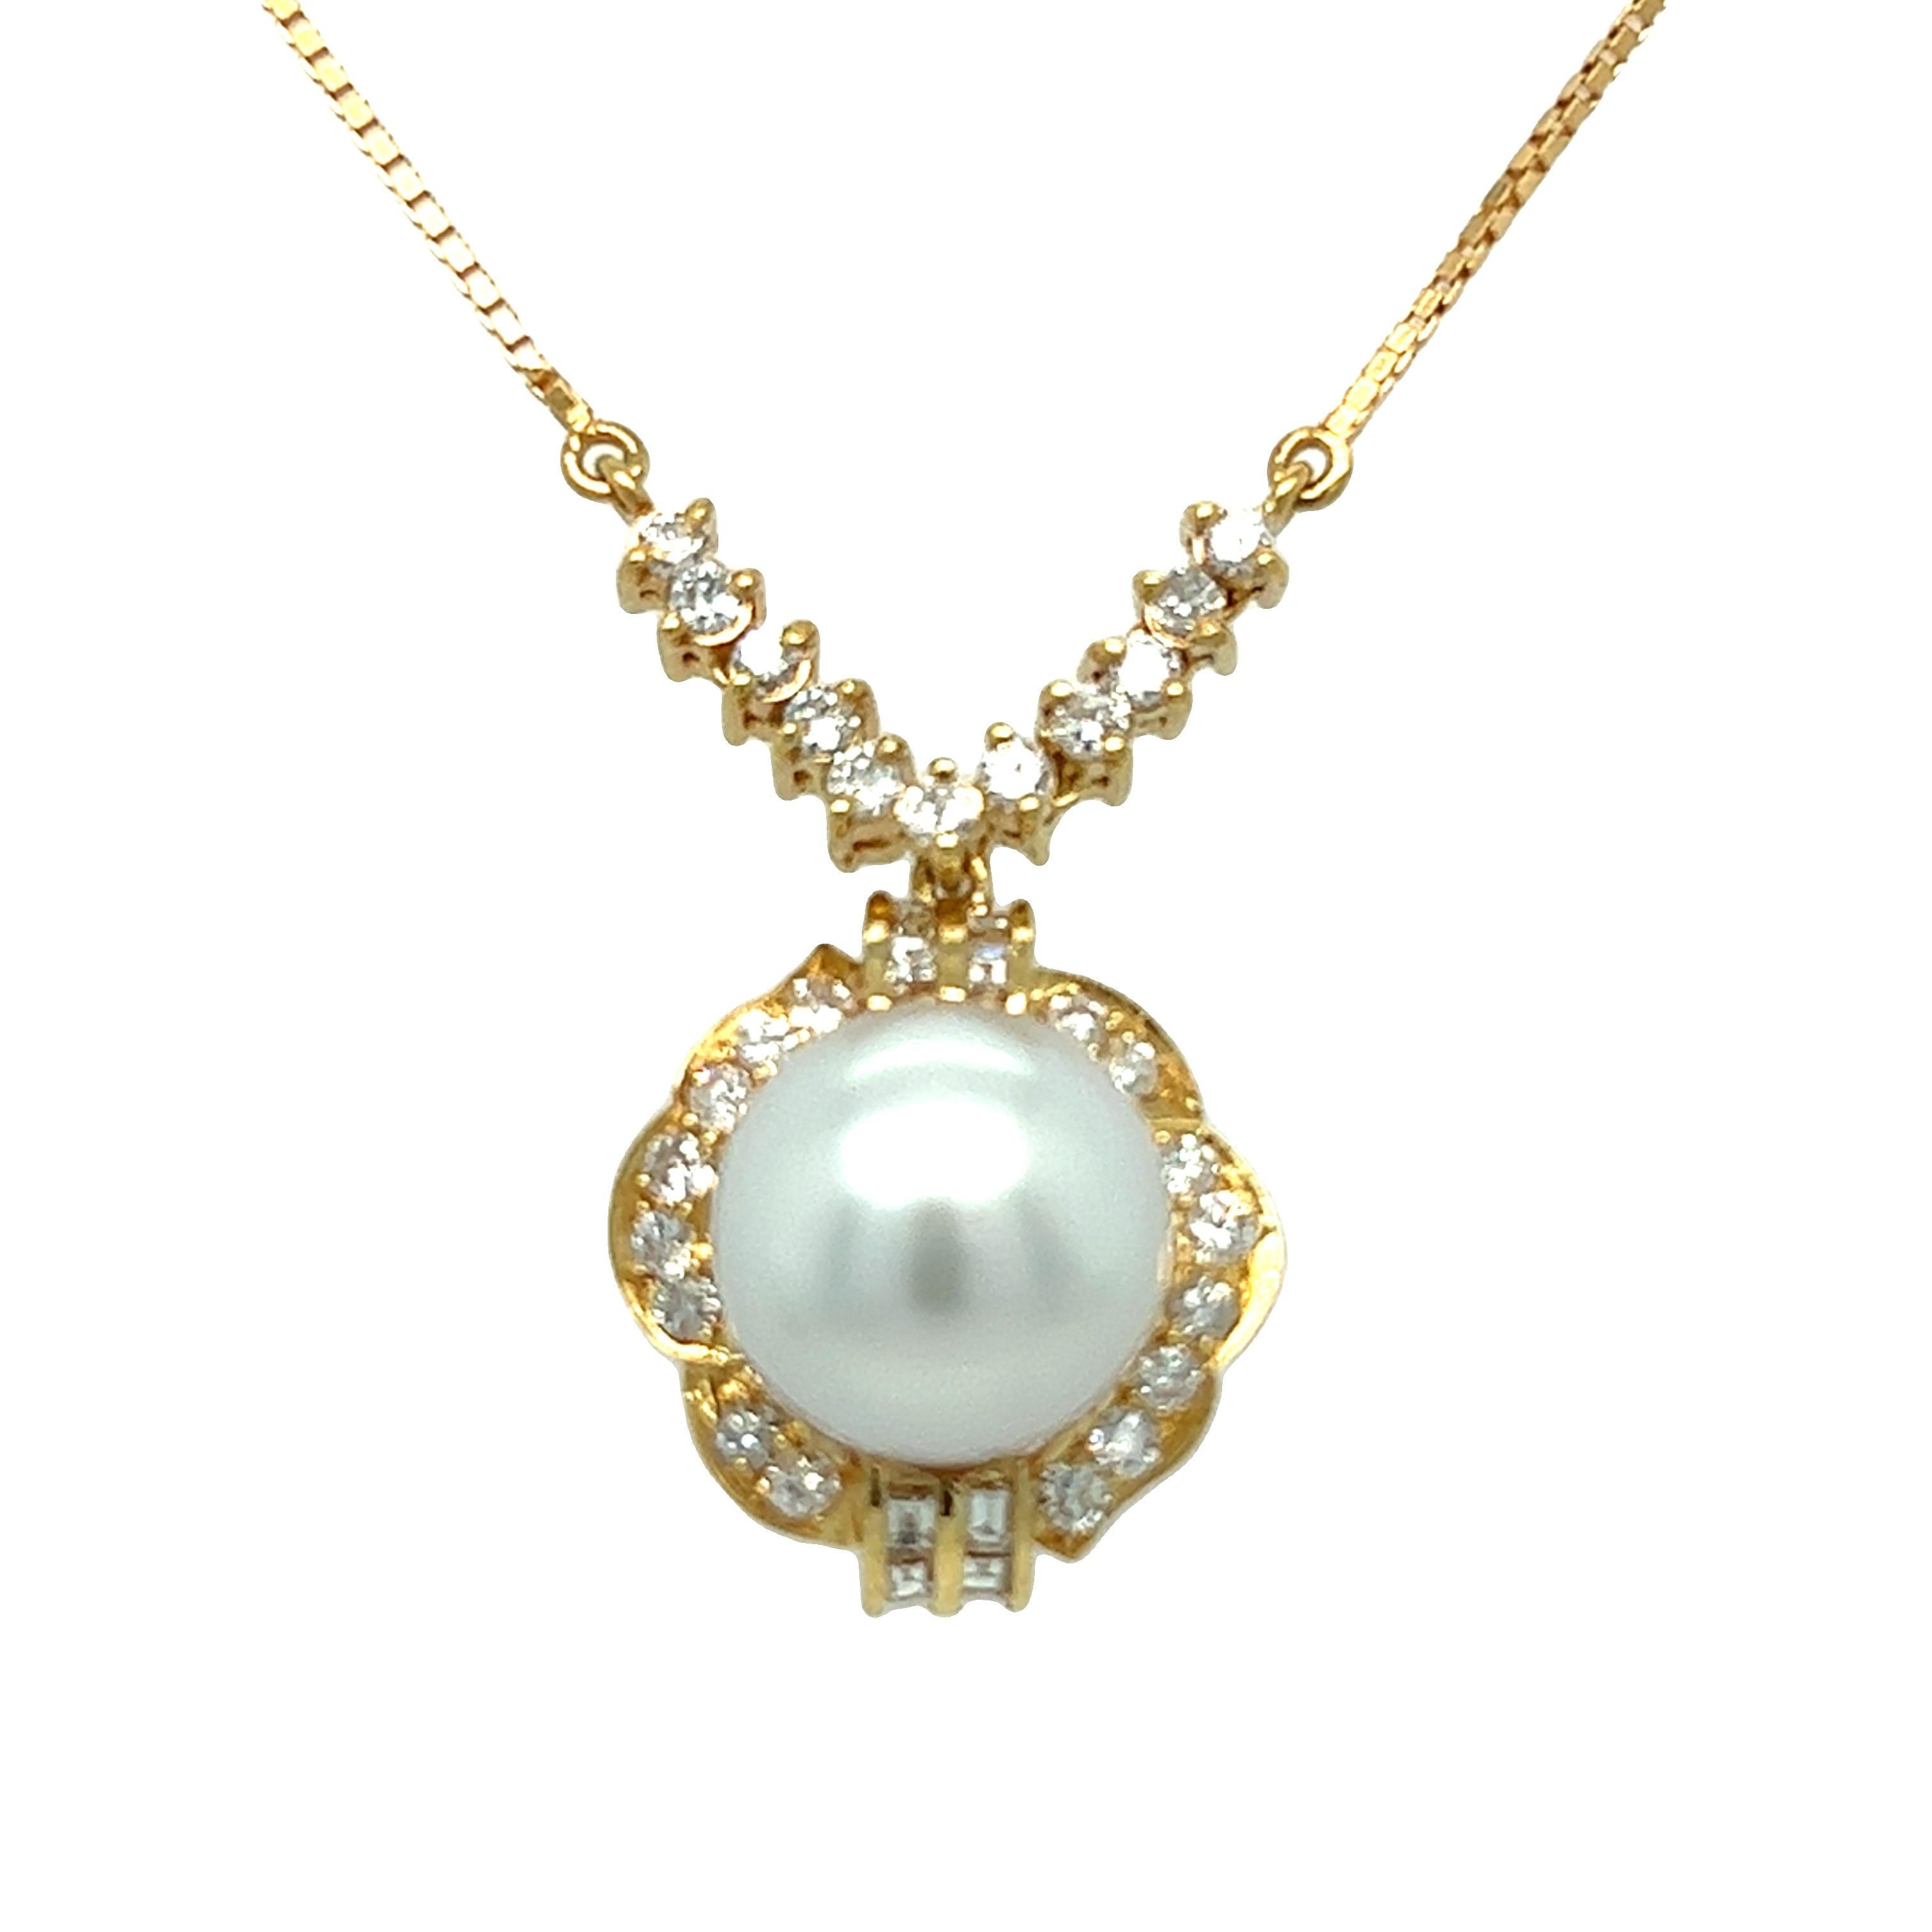 Un magnifique ensemble de bague et collier en perles et diamants. Les deux pièces sont en excellent état.

La bague comporte une perle ronde grise au lustre magnifique. Un diamant presque incolore pesant environ 0,52 carat entoure magnifiquement la